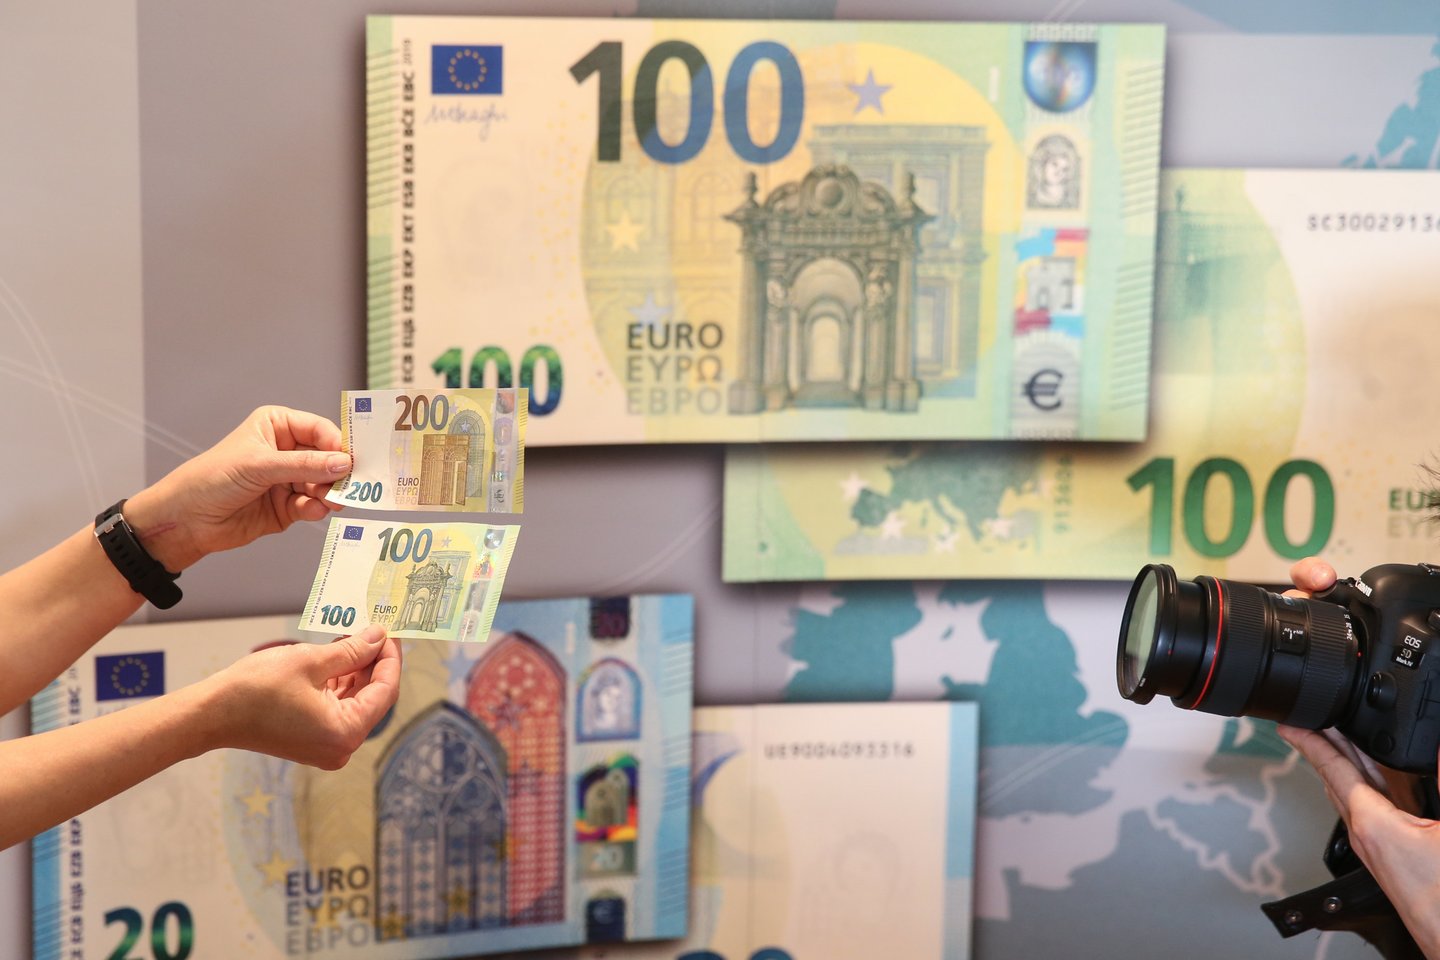 Vokietijoje pradėtas trejus metus truksiantis universalių bazinių pajamų eksperimentas, kurio metu 120 atrinktų žmonių kas mėnesį bus mokama po 1,2 tūkst. eurų.<br>R.Danisevičiaus nuotr.